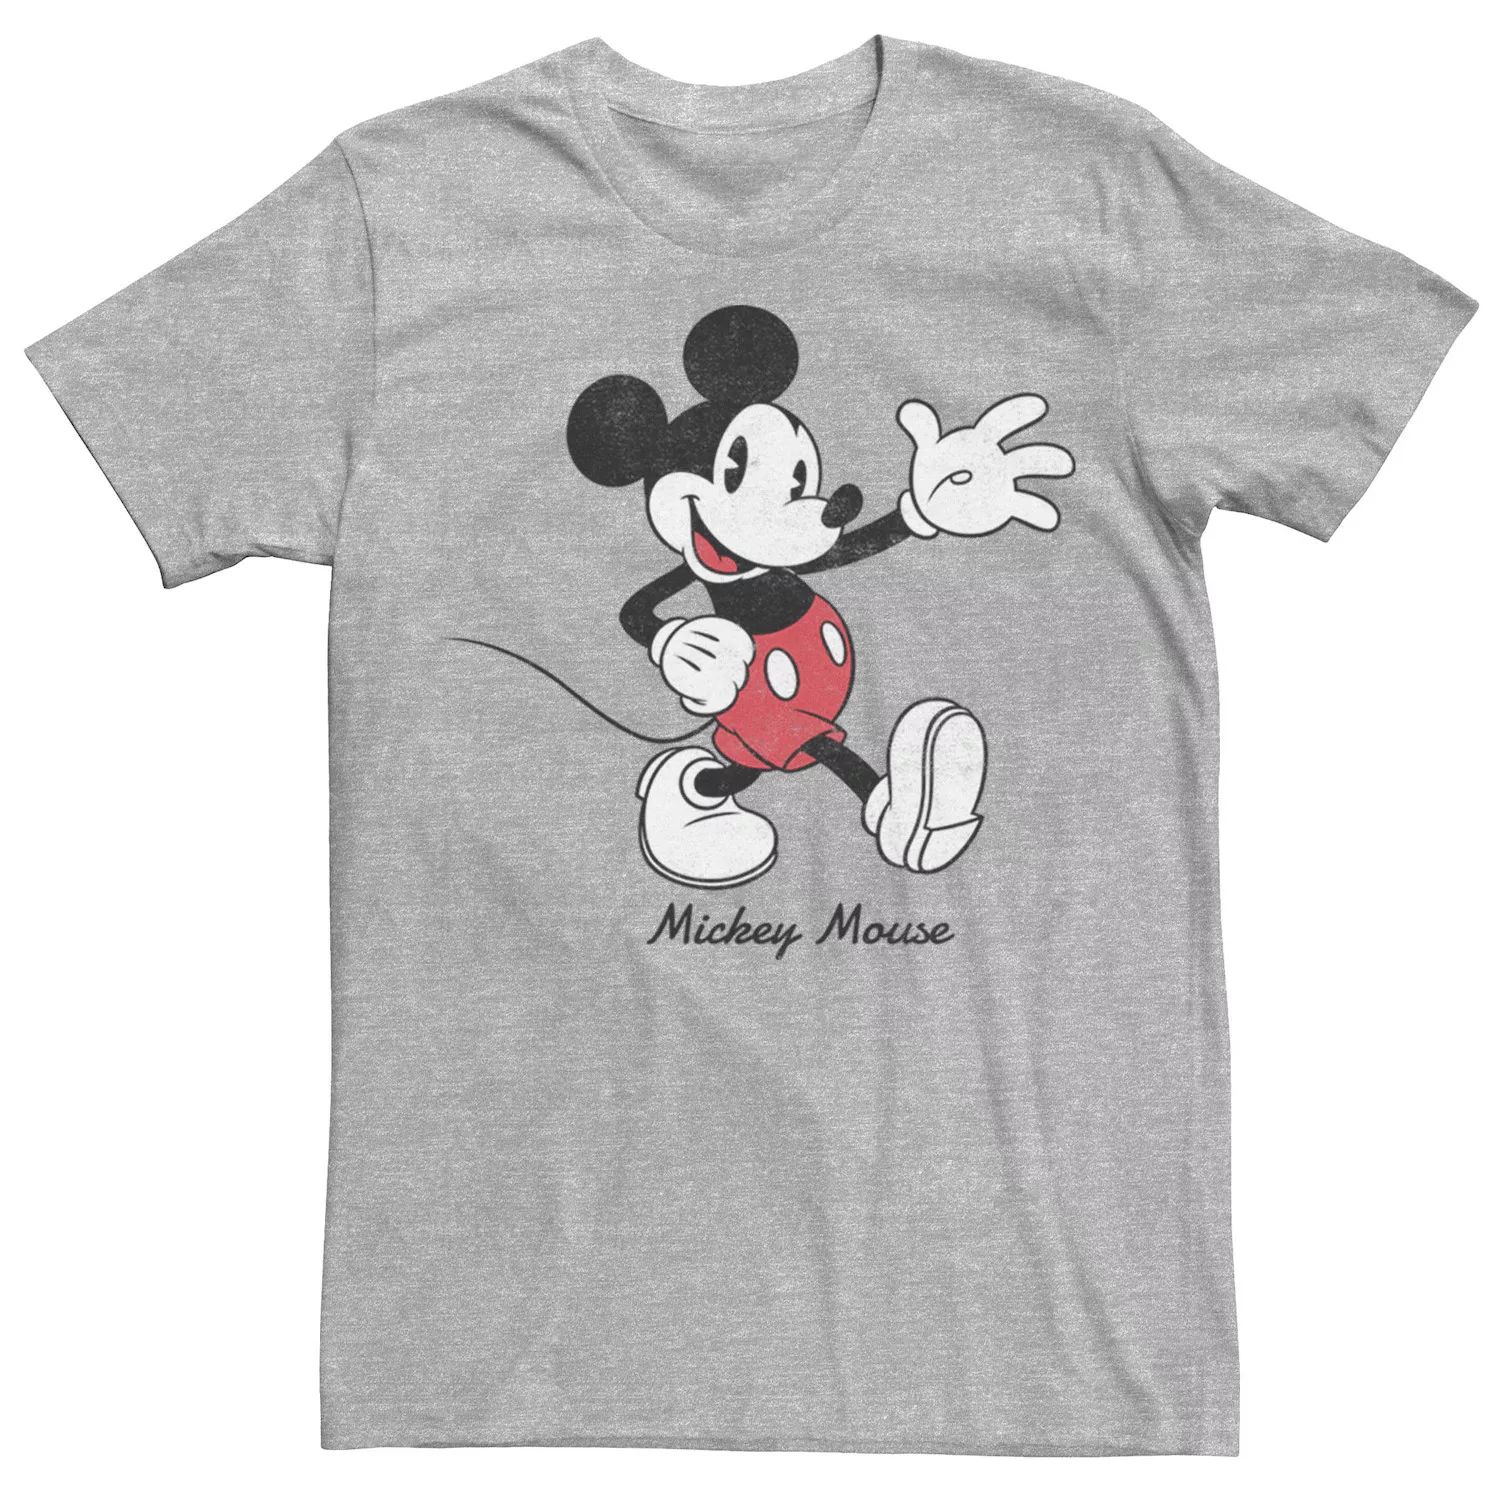 цена Мужская футболка с круглым текстом и логотипом Микки Мауса Disney